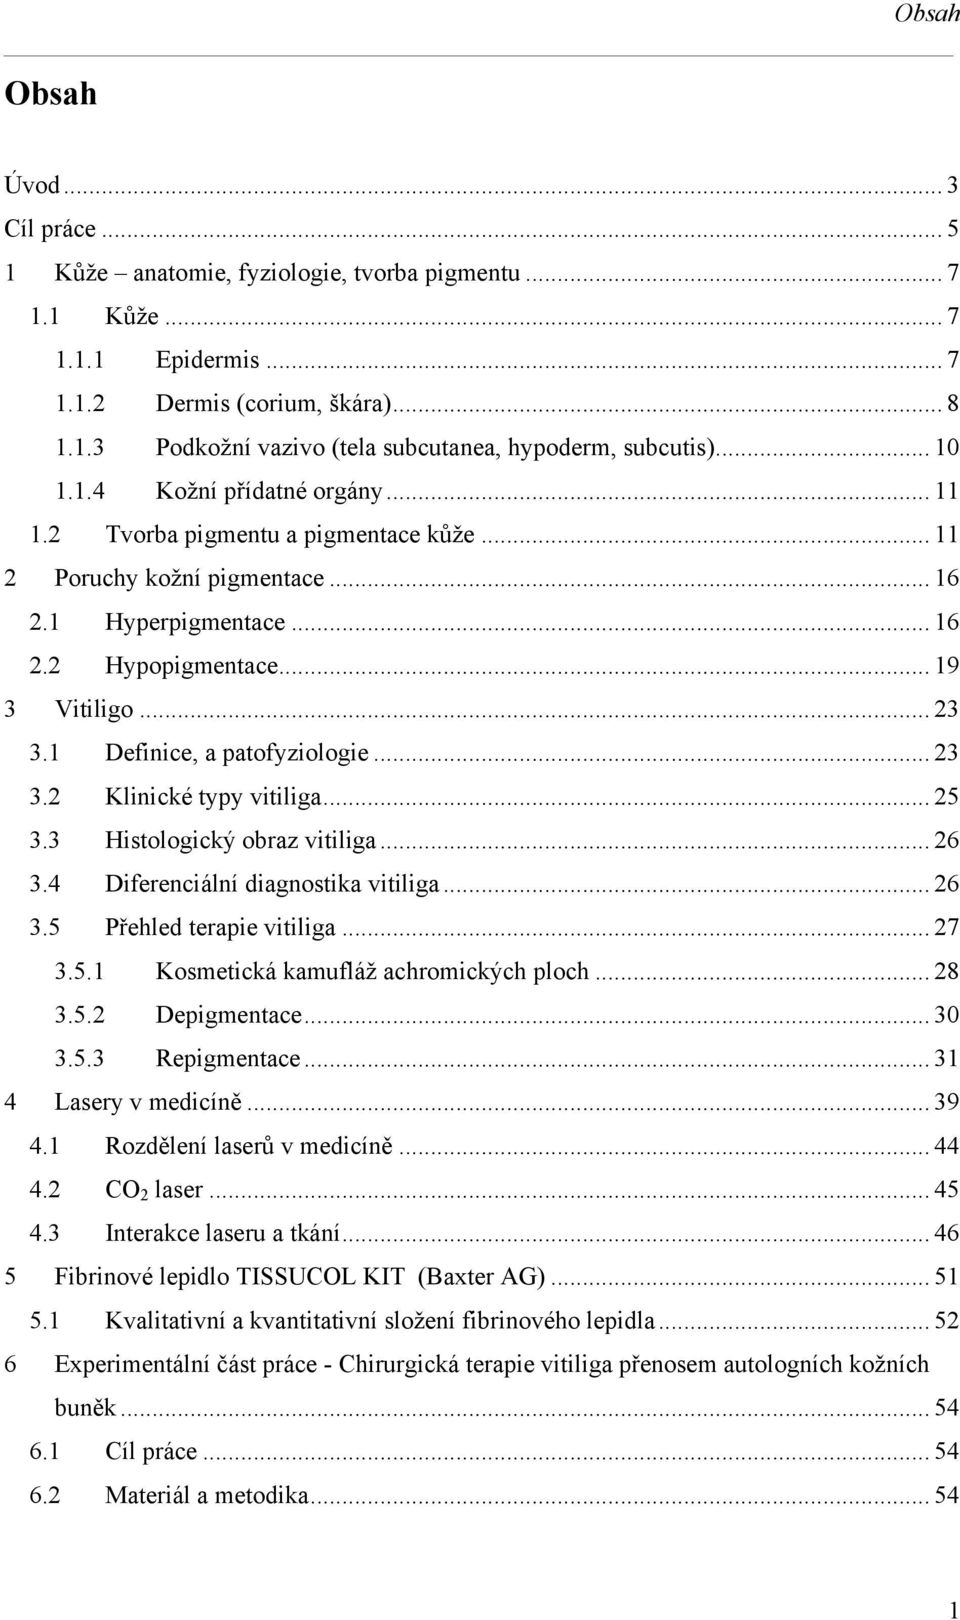 1 Definice, a patofyziologie... 23 3.2 Klinické typy vitiliga... 25 3.3 Histologický obraz vitiliga... 26 3.4 Diferenciální diagnostika vitiliga... 26 3.5 Přehled terapie vitiliga... 27 3.5.1 Kosmetická kamufláž achromických ploch.